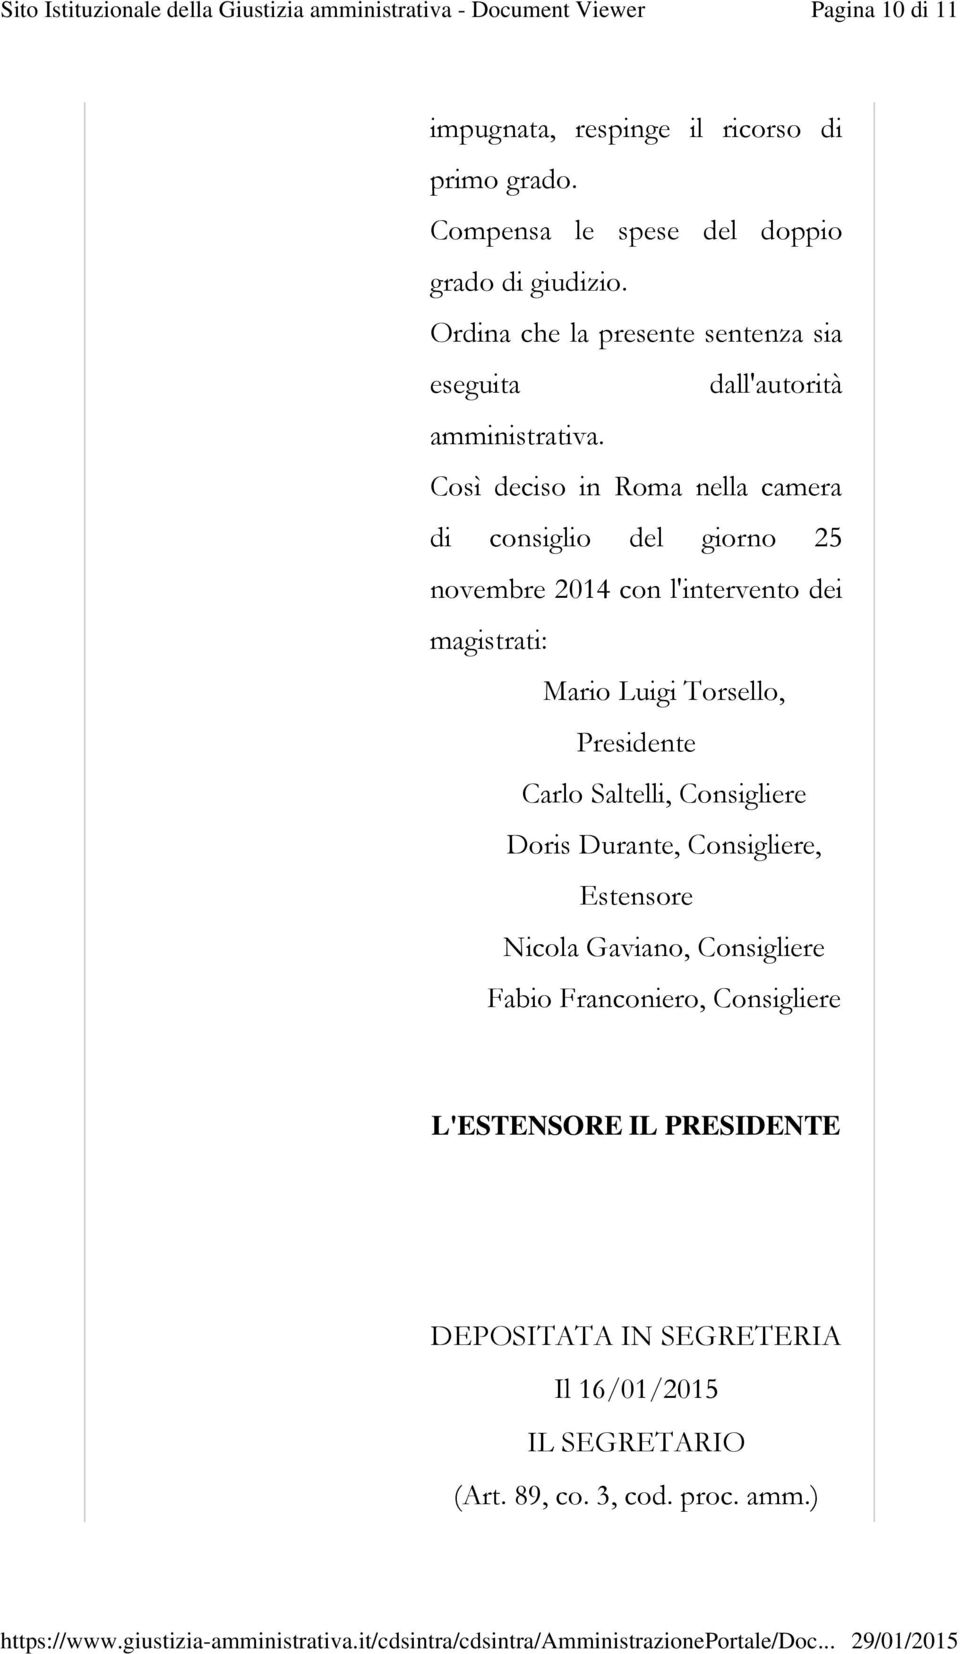 Così deciso in Roma nella camera di consiglio del giorno 25 novembre 2014 con l'intervento dei magistrati: Mario Luigi Torsello, Presidente